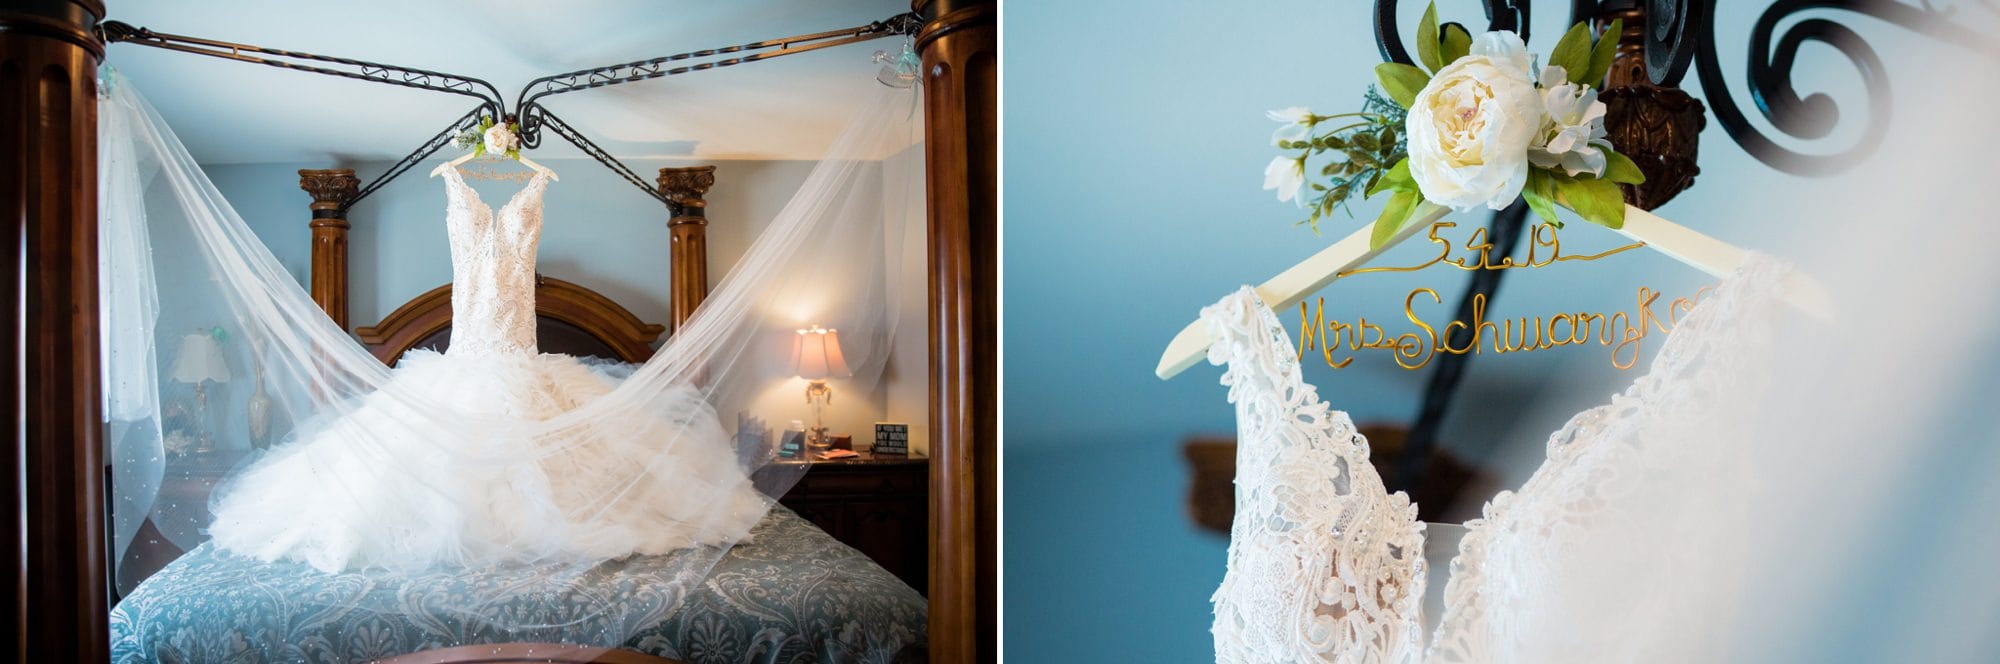 Wedding dress hanging on bed frame